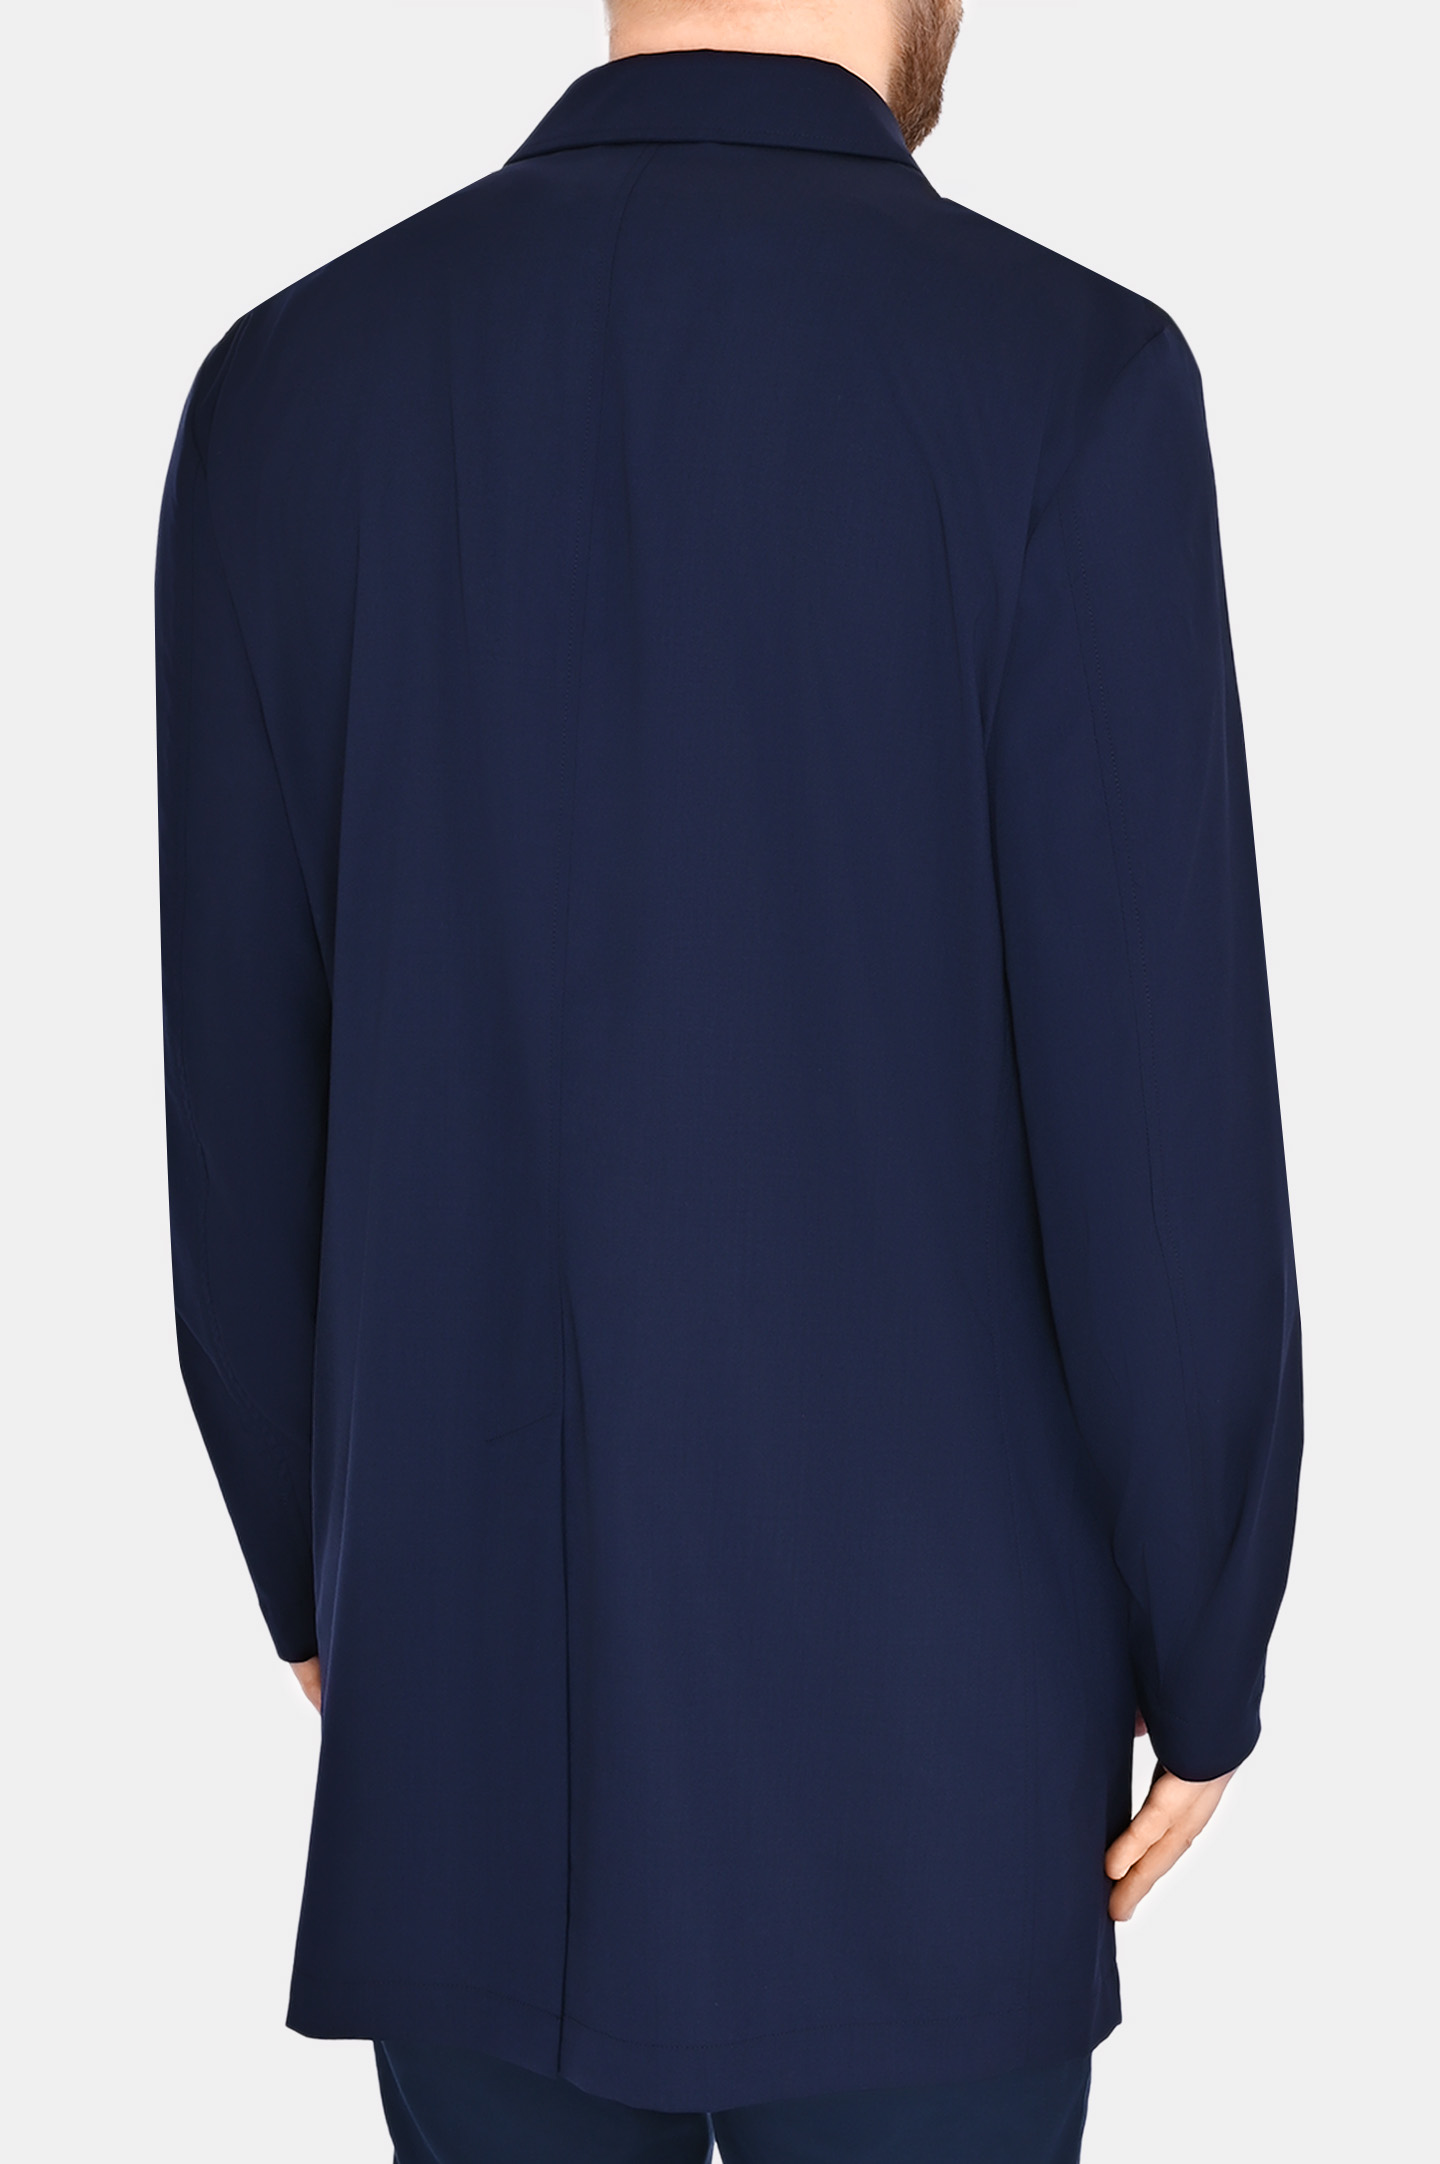 Пальто классическое с карманами KITON UW1725K0638C0, цвет: Темно-синий, Мужской